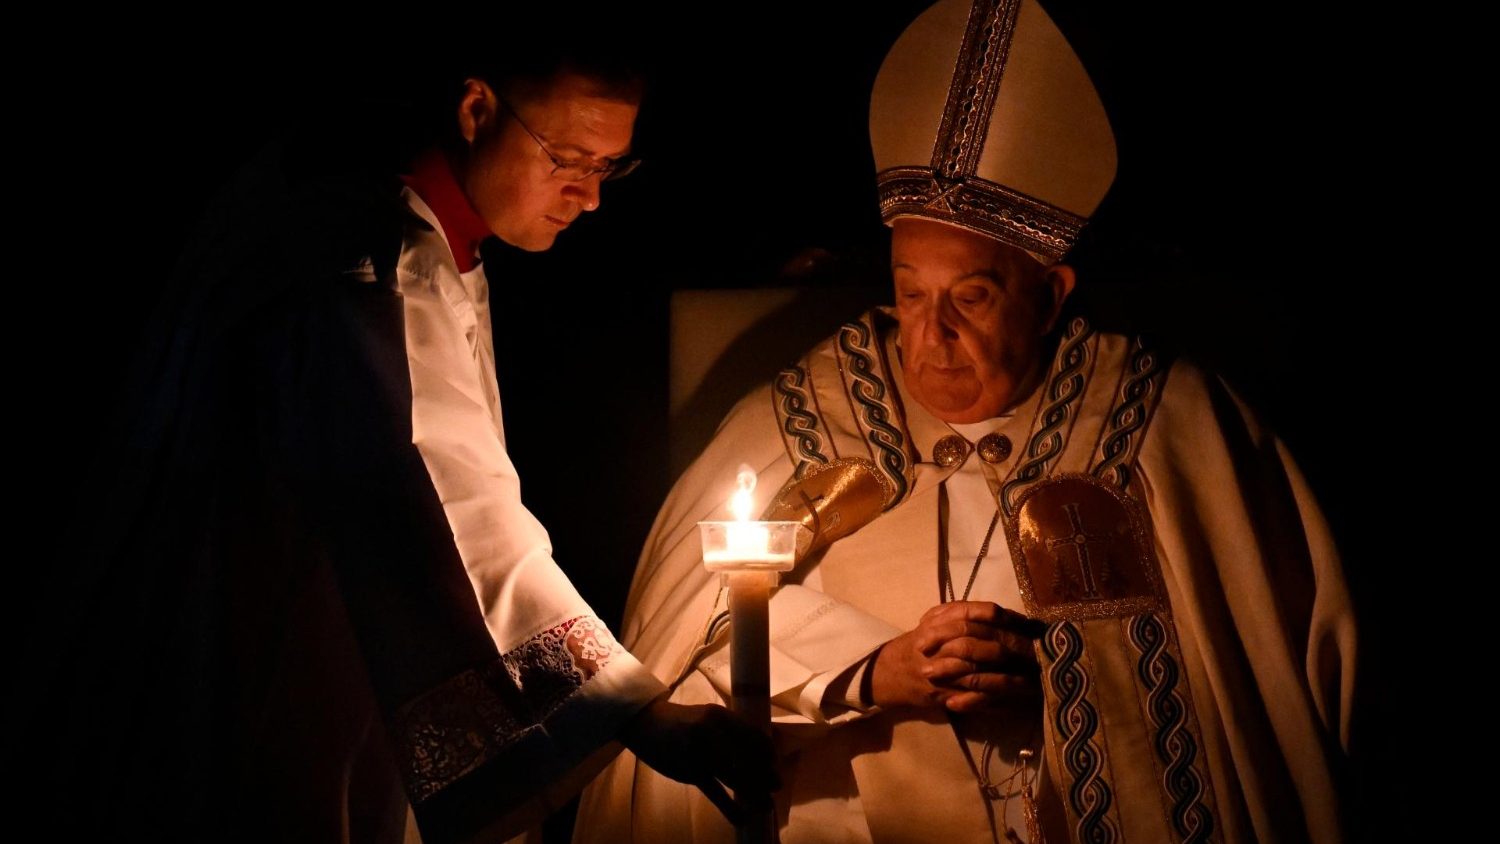 El Papa en Nochebuena: Con Jesús la tumba no impedirá la alegría de vivir